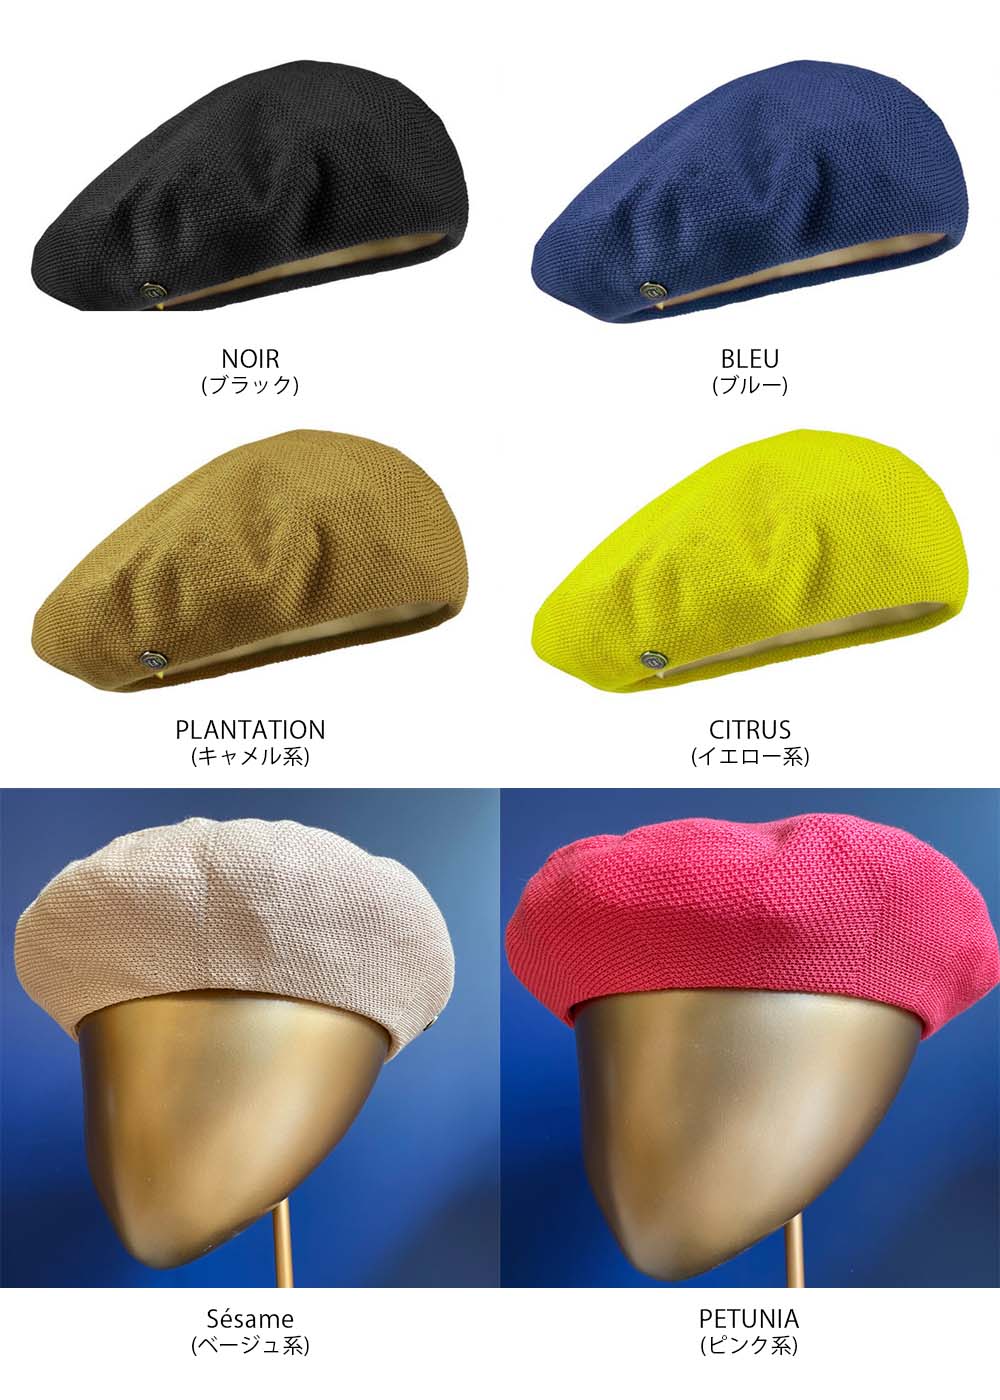 LAULHERE ロレール ベレー帽 PLUMES プルムス フランス製 コットン